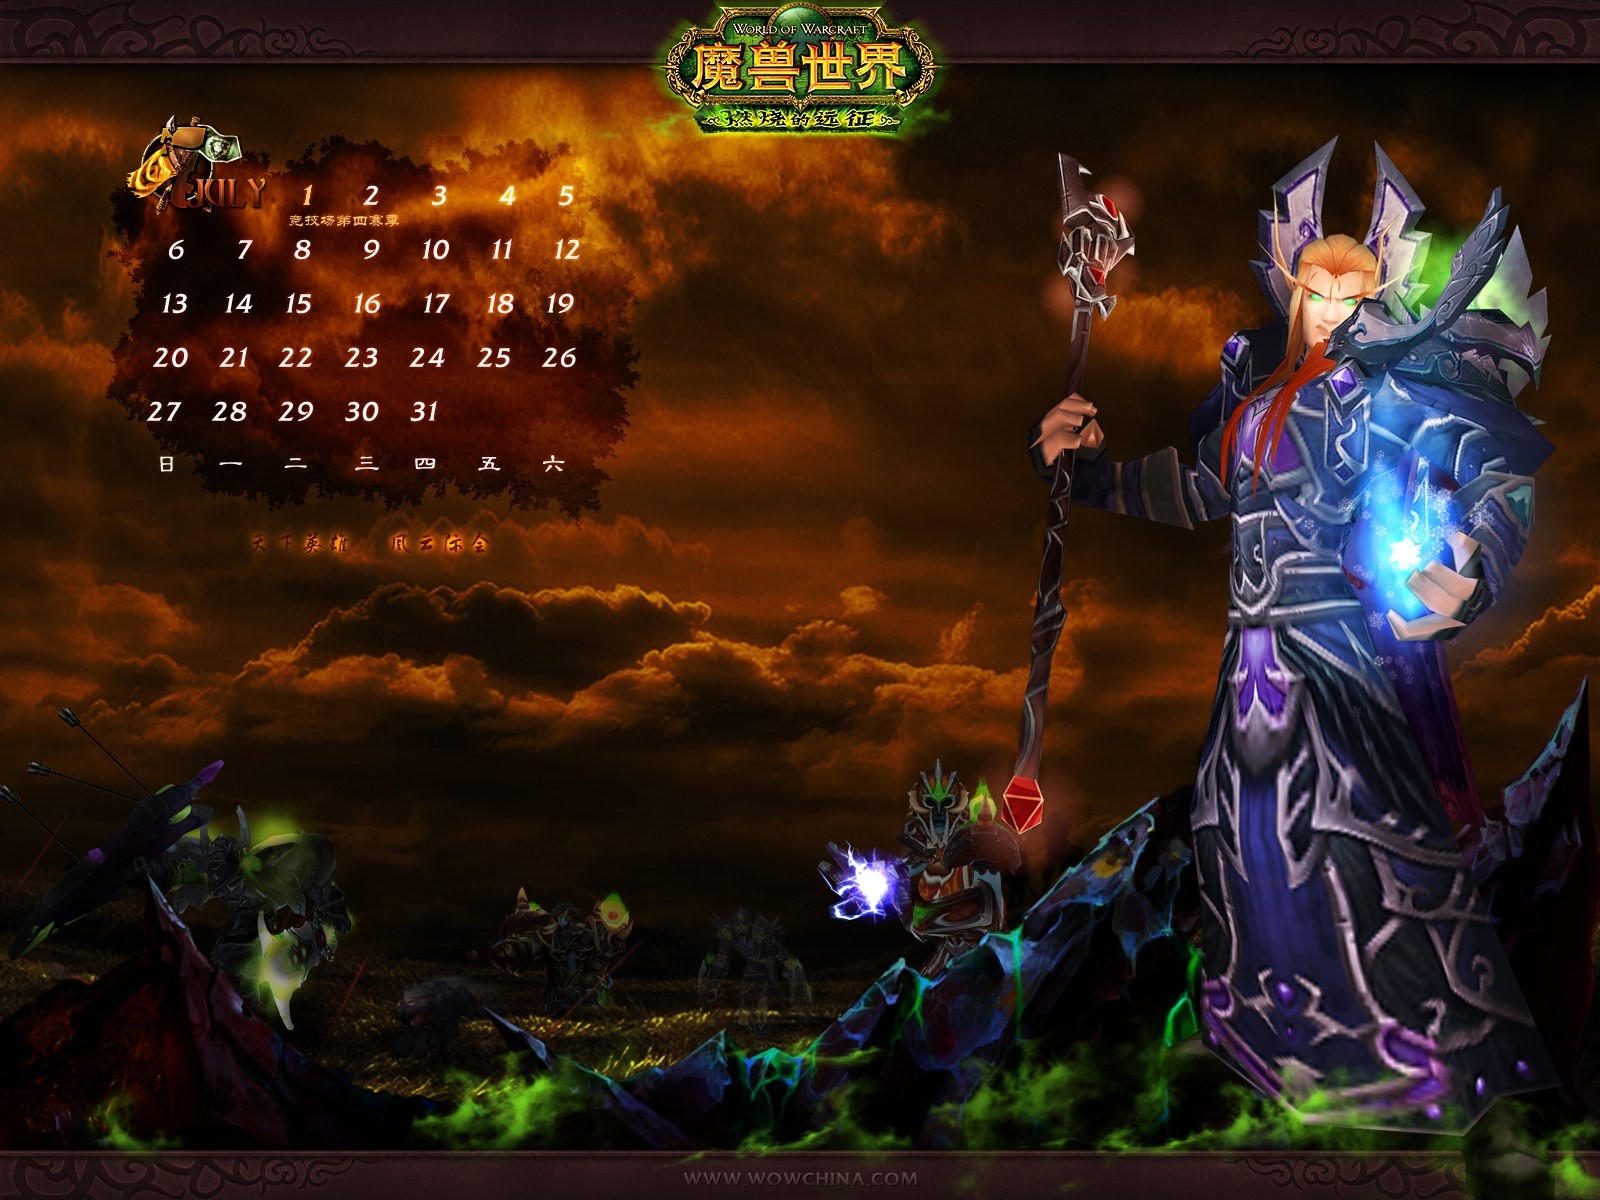 Мир Warcraft: официальные обои The Burning Crusade в (2) #26 - 1600x1200